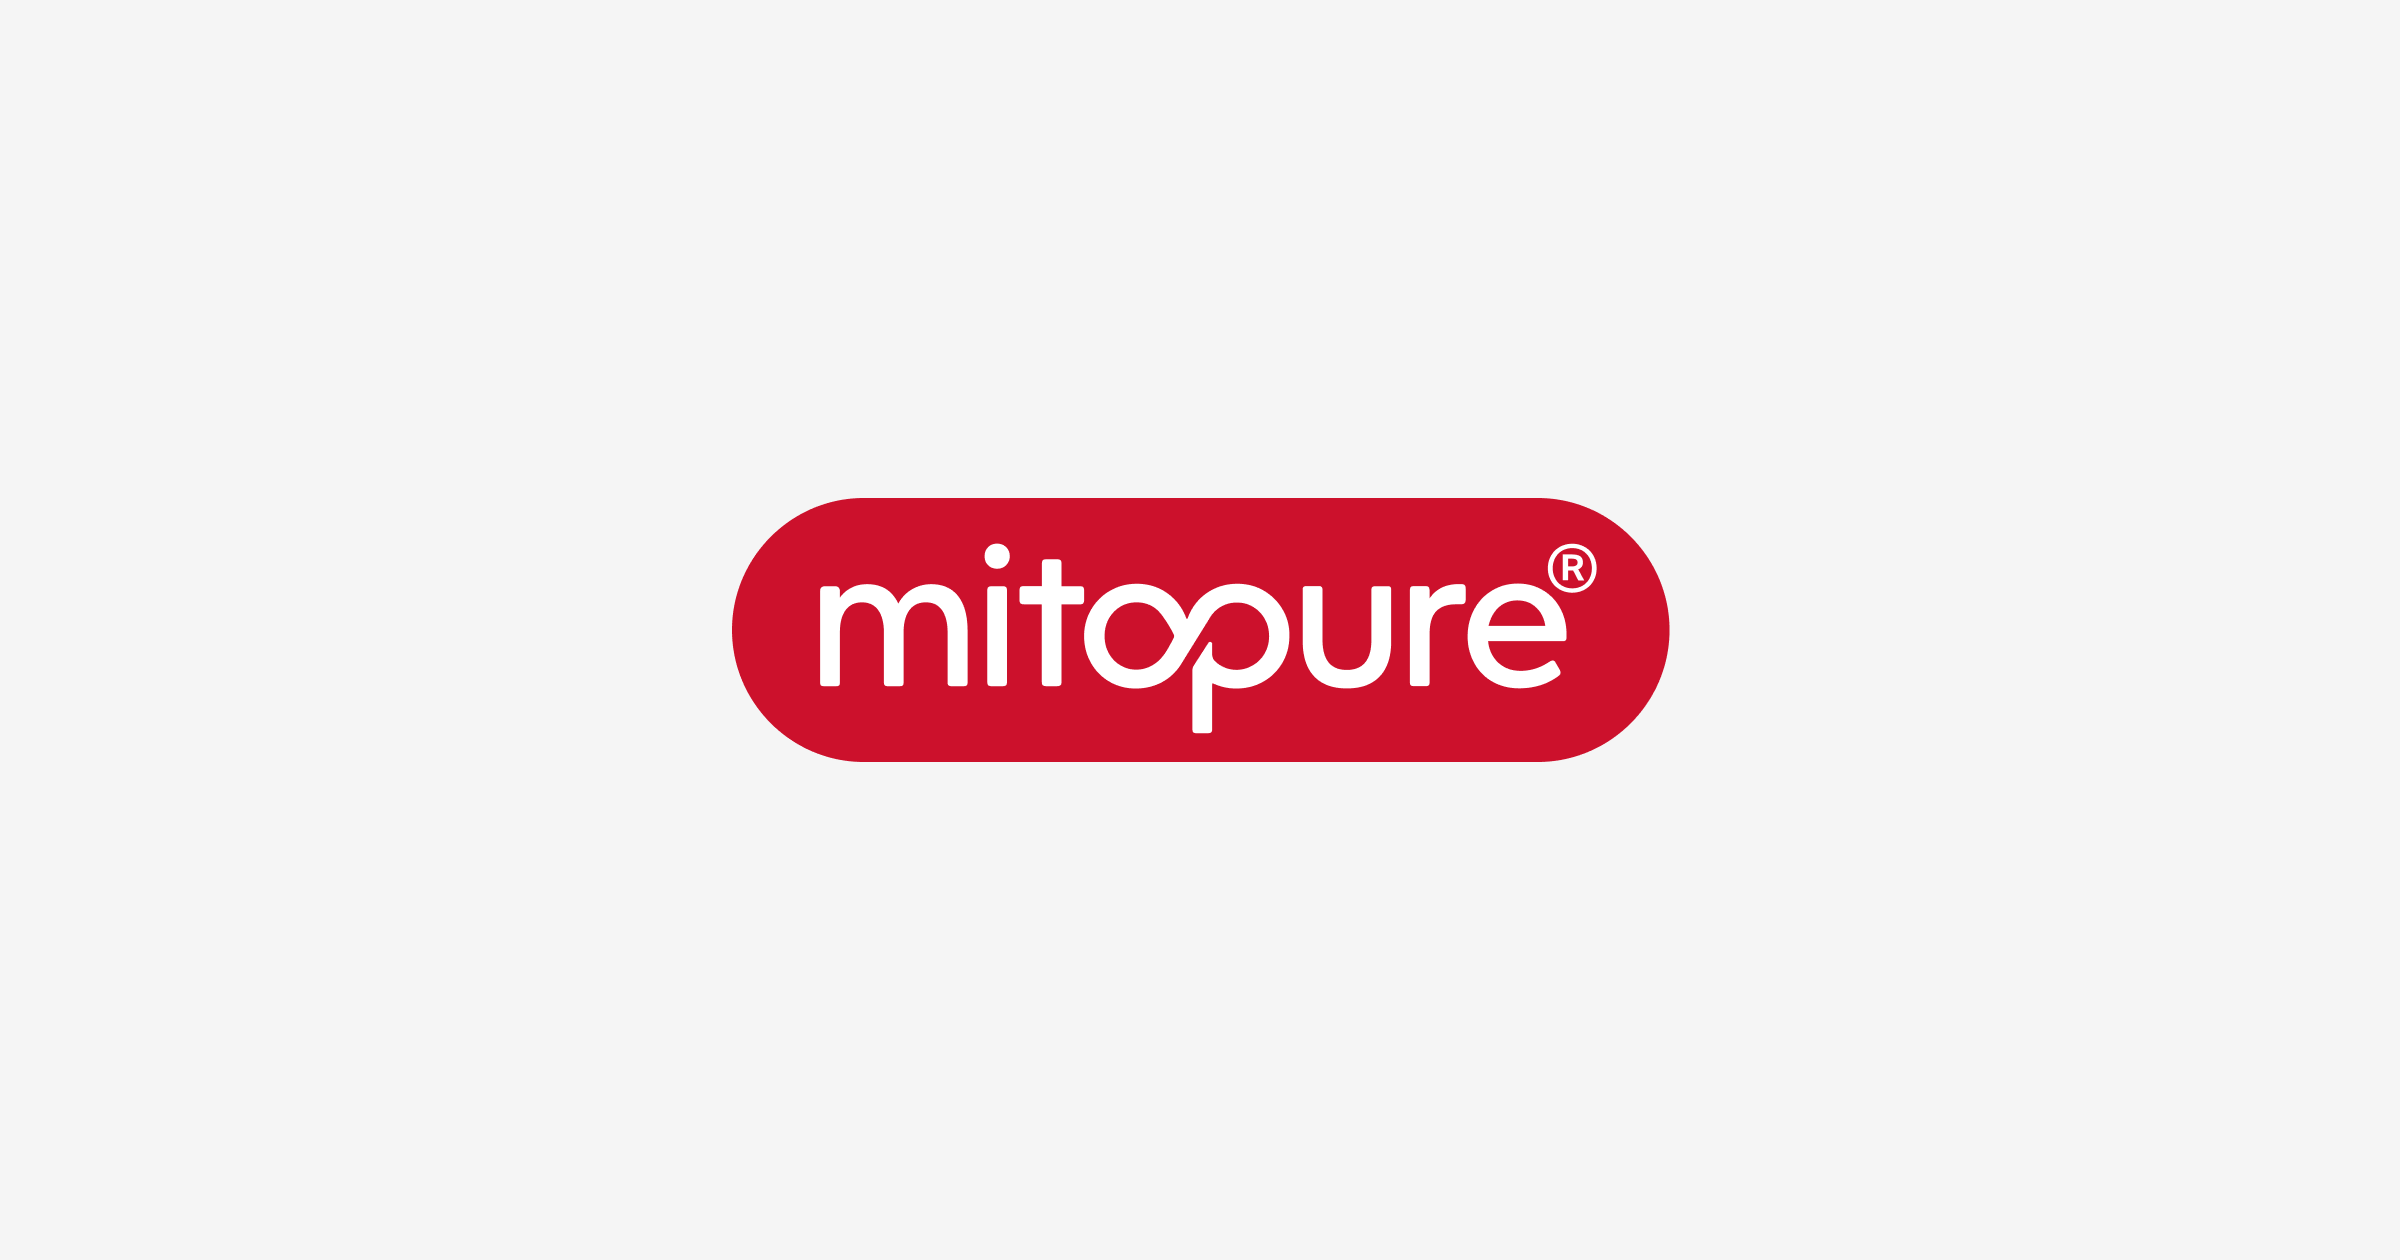 www.mitopure.com